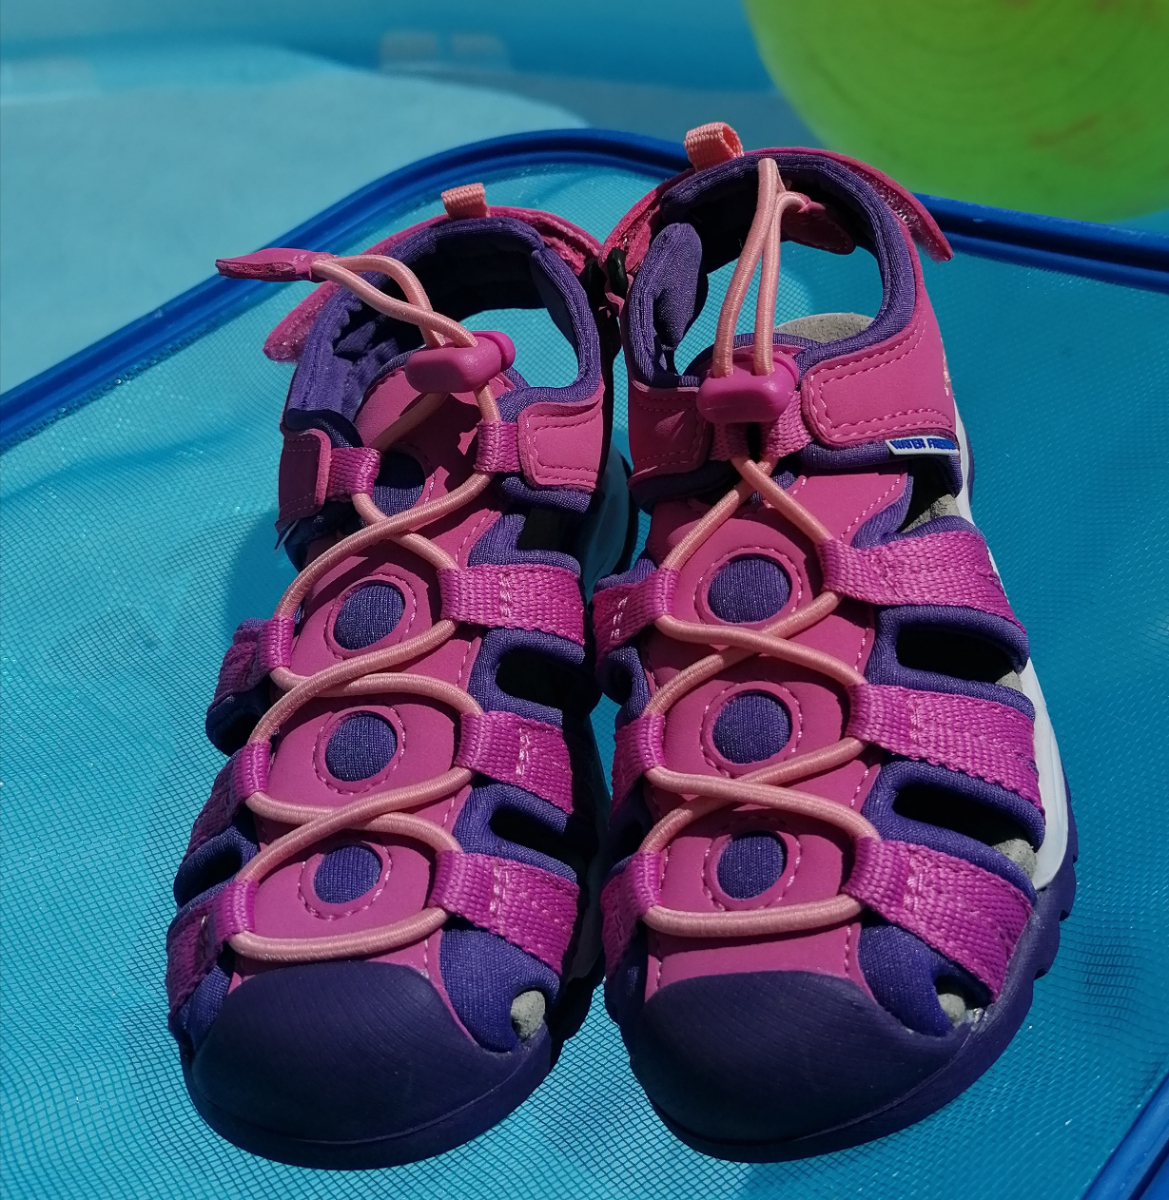 Trabajamos las primeras marcas de calzado infantil del mercado: BIOMECANICS, GEOX, GARVALIN, CHICCO, TITANITOS, GORILA etc. Aprovecha del 15% de descuento en sandalias Geox.